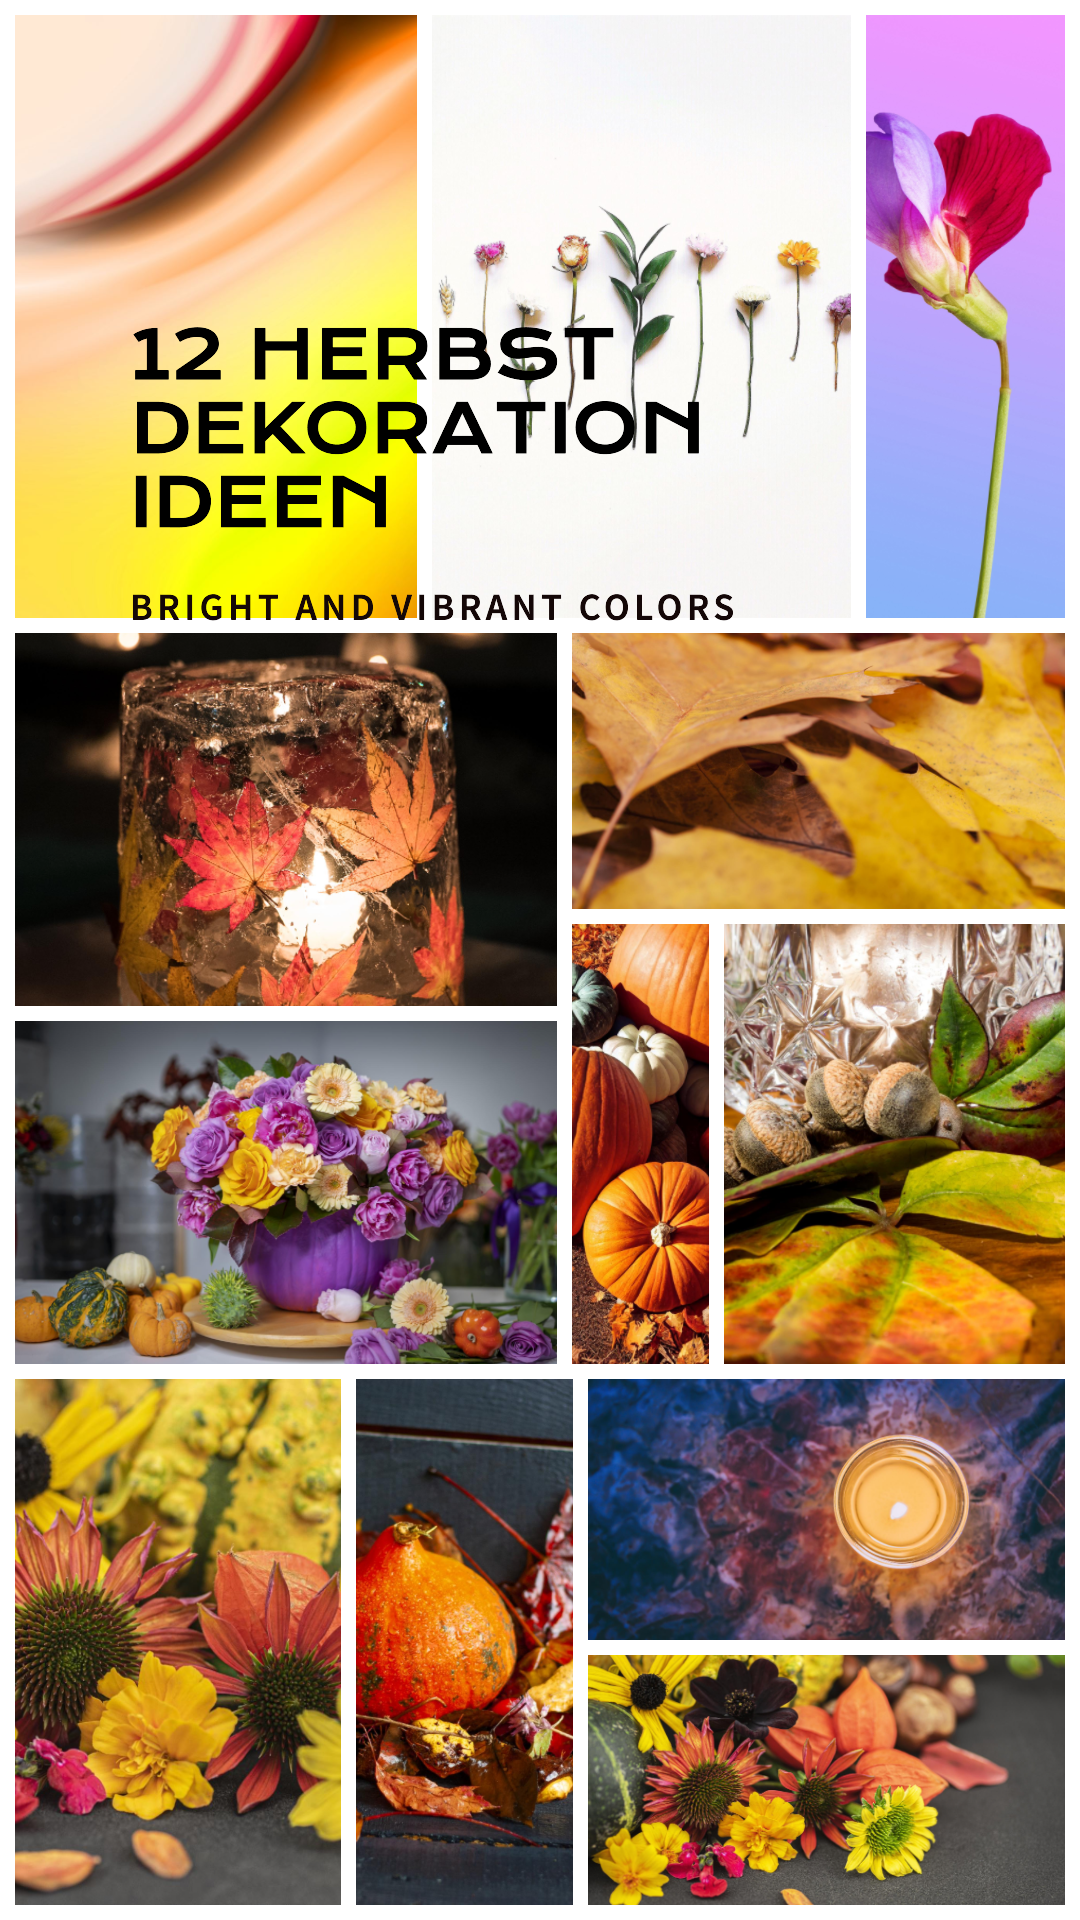 Herbst Dekoration - Kreative Ideen für die Perfekte Herbstatmosphäre